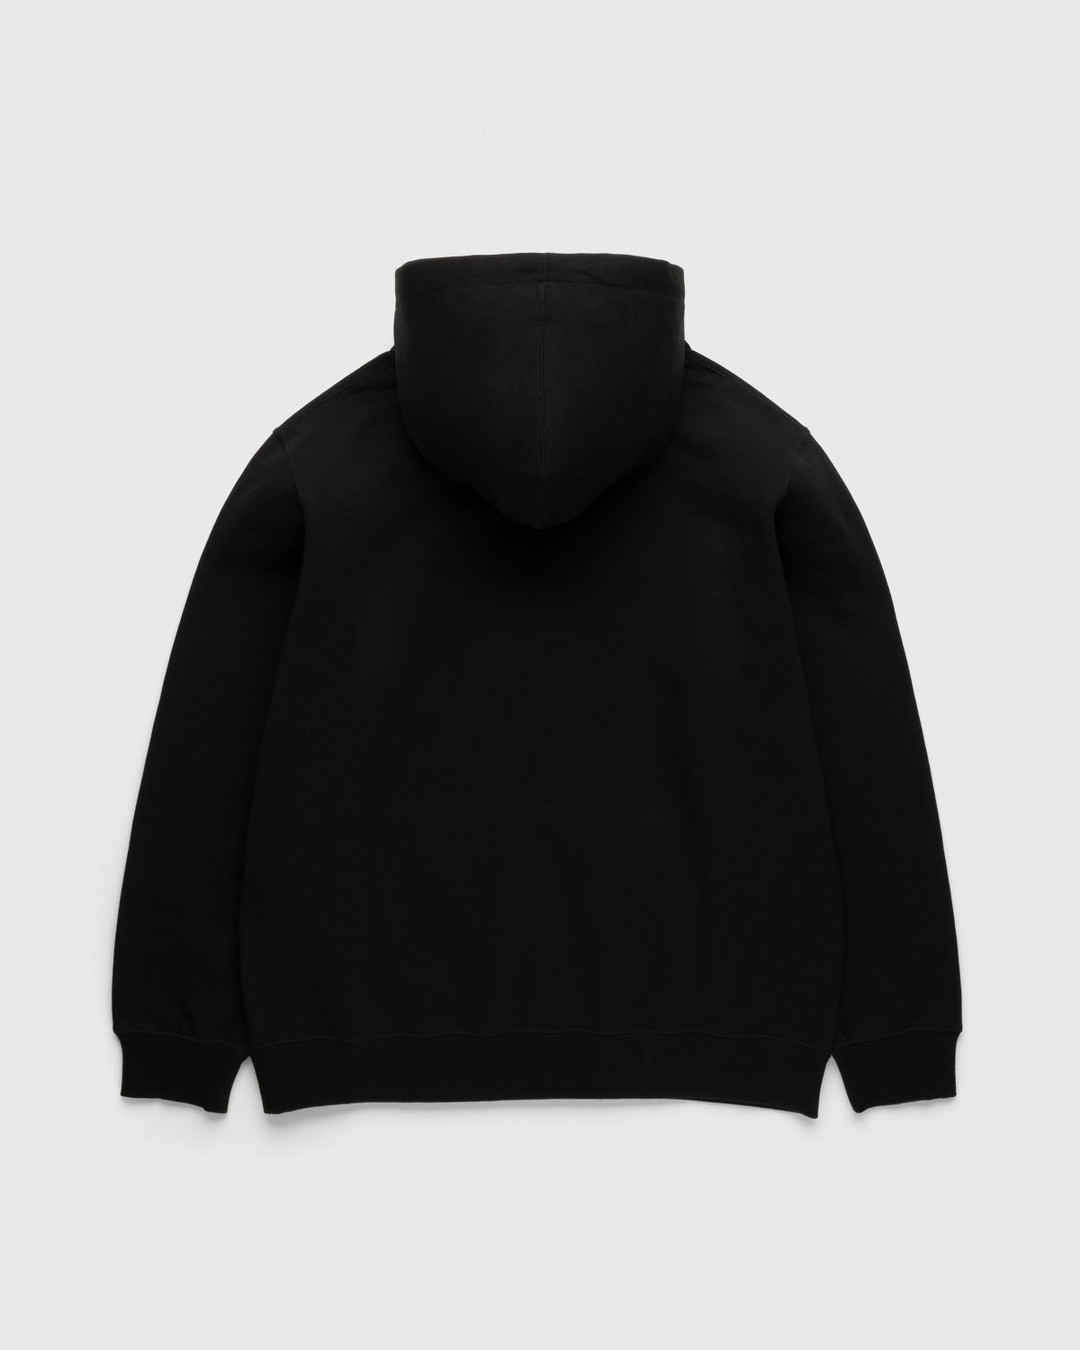 Gramicci – One Point Hooded Sweatshirt Black - Hoodies - Black - Image 2